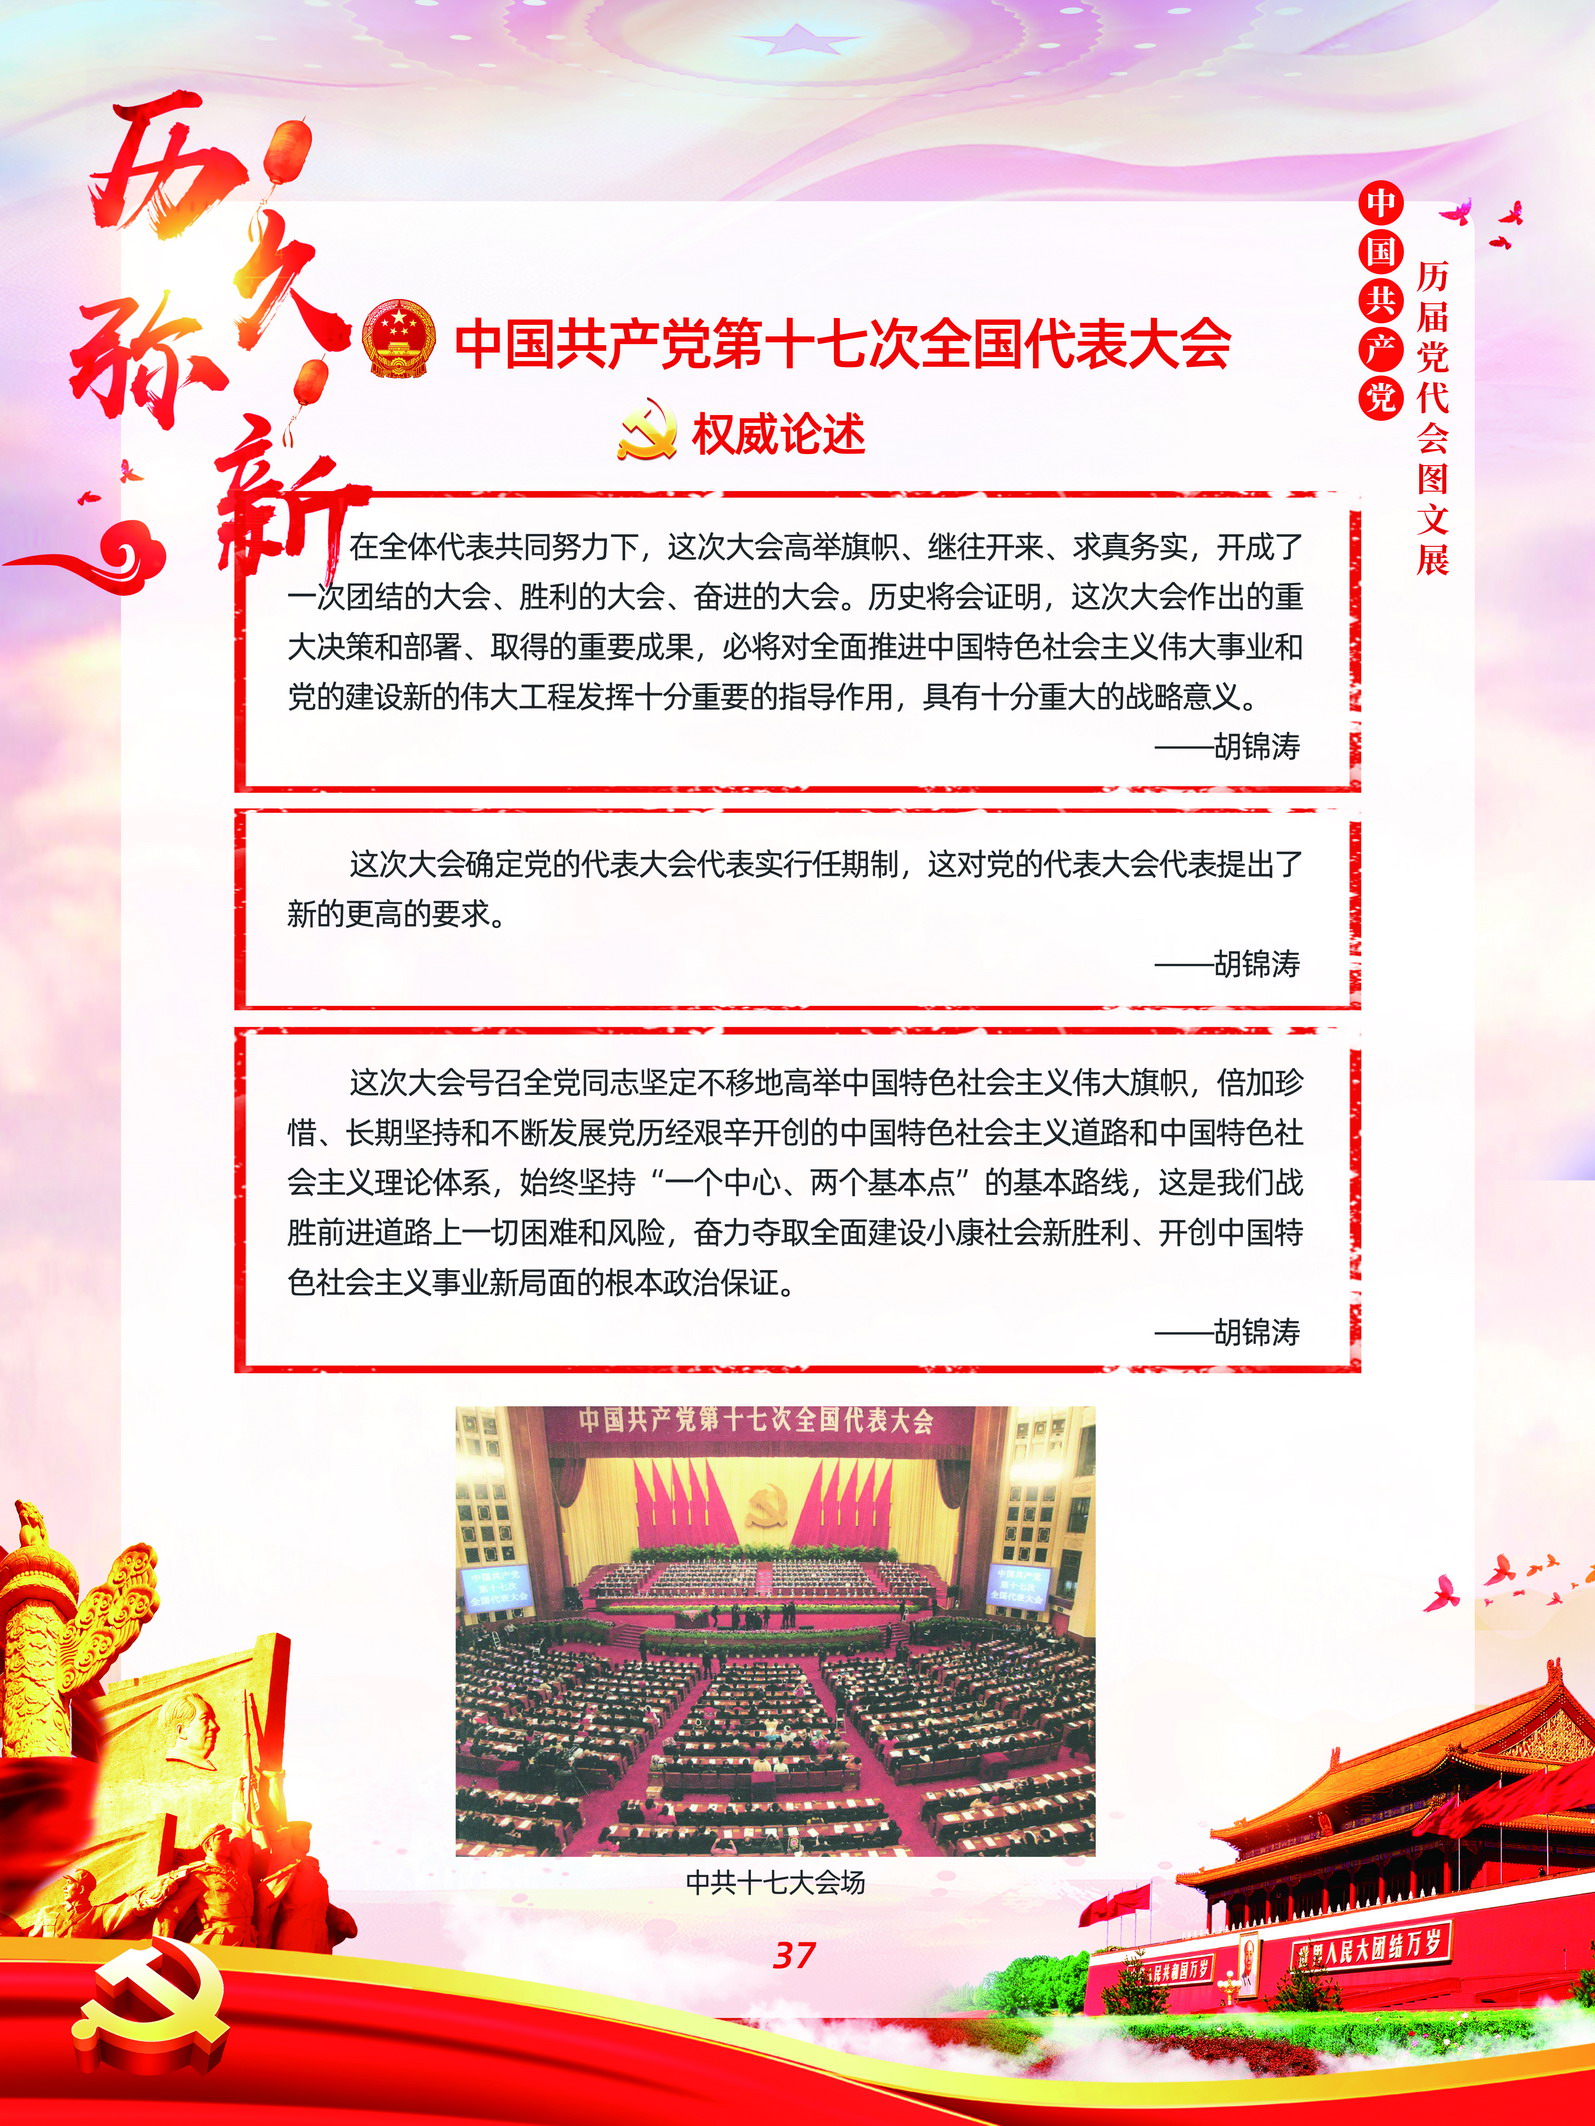 中国共产党历届党代会图文展_图36